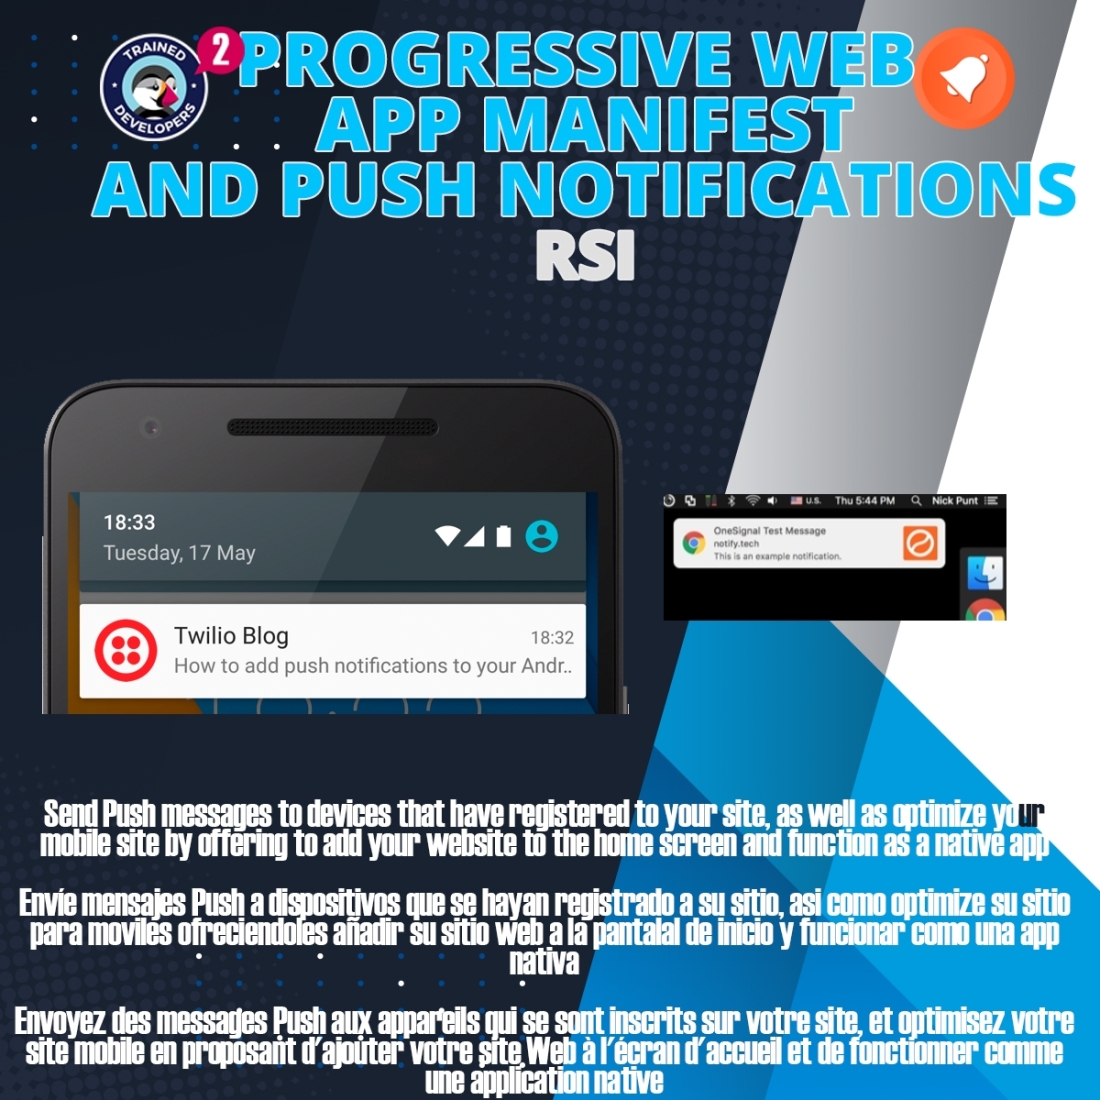 How to Test Progressive Web App